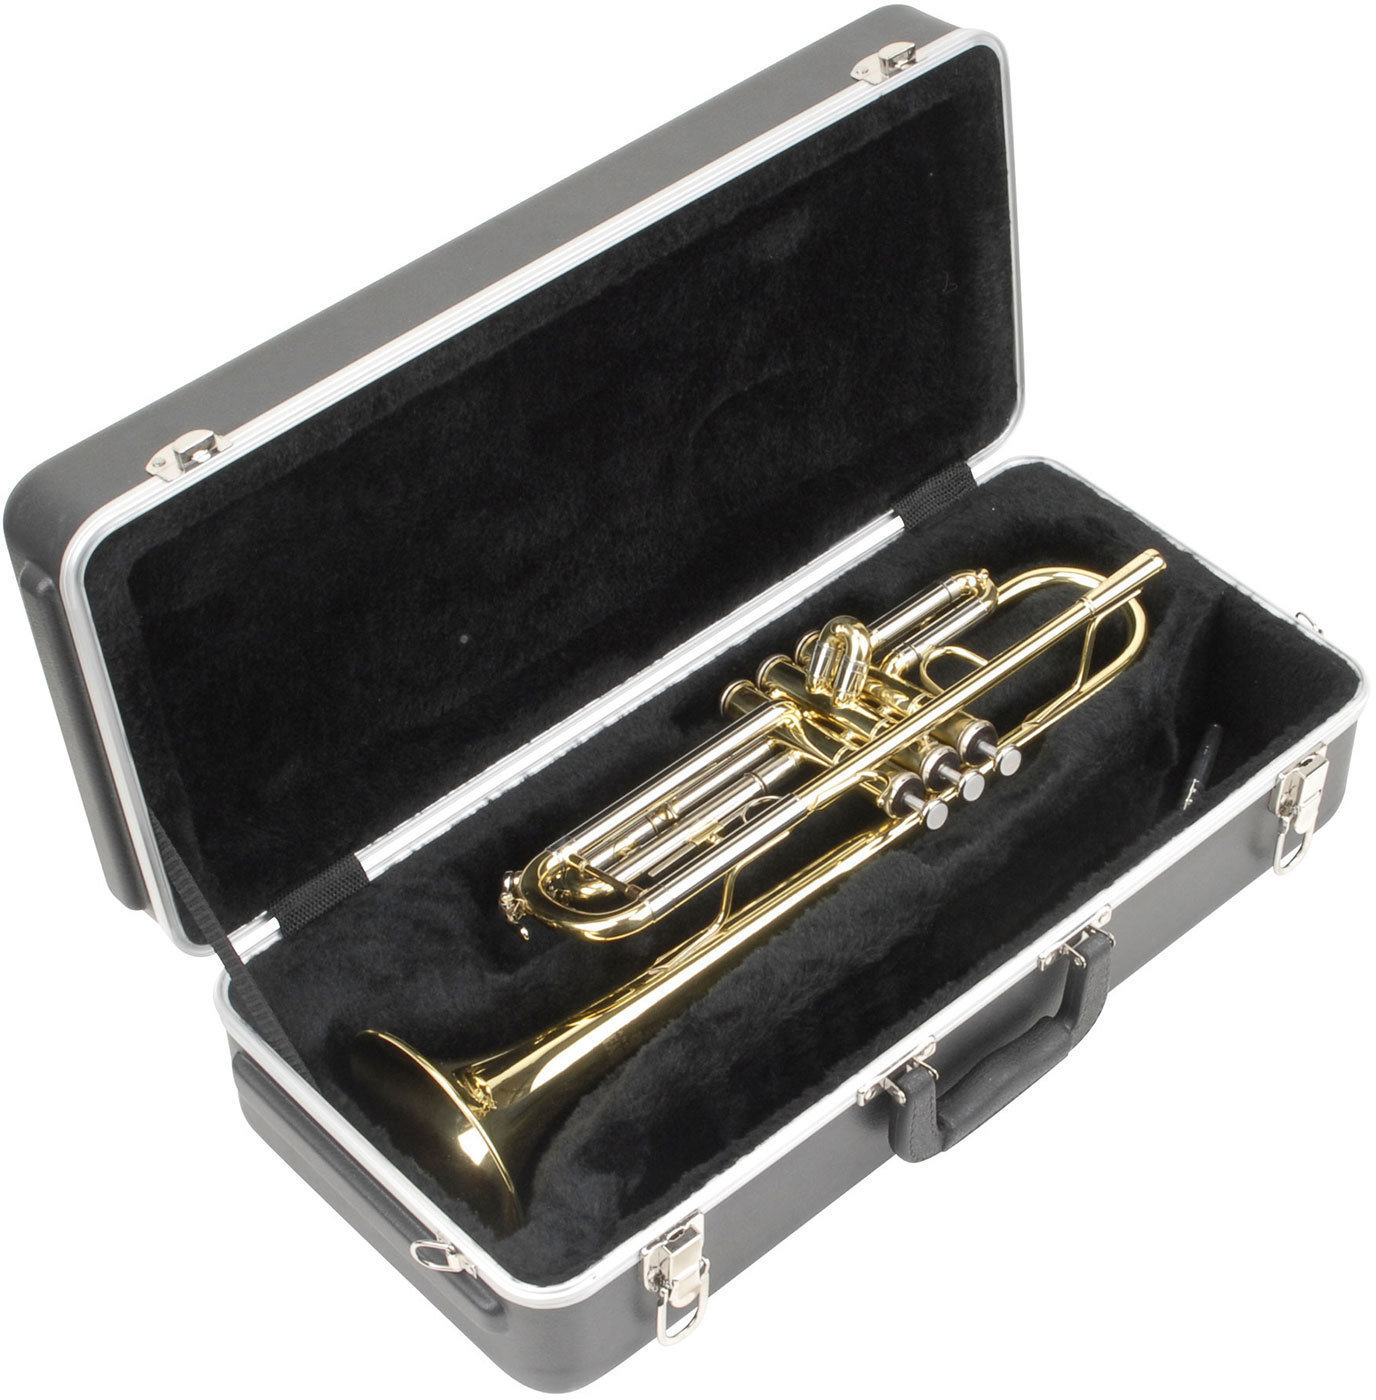 Housse pour trompette SKB Cases 1SKB-330 R Housse pour trompette